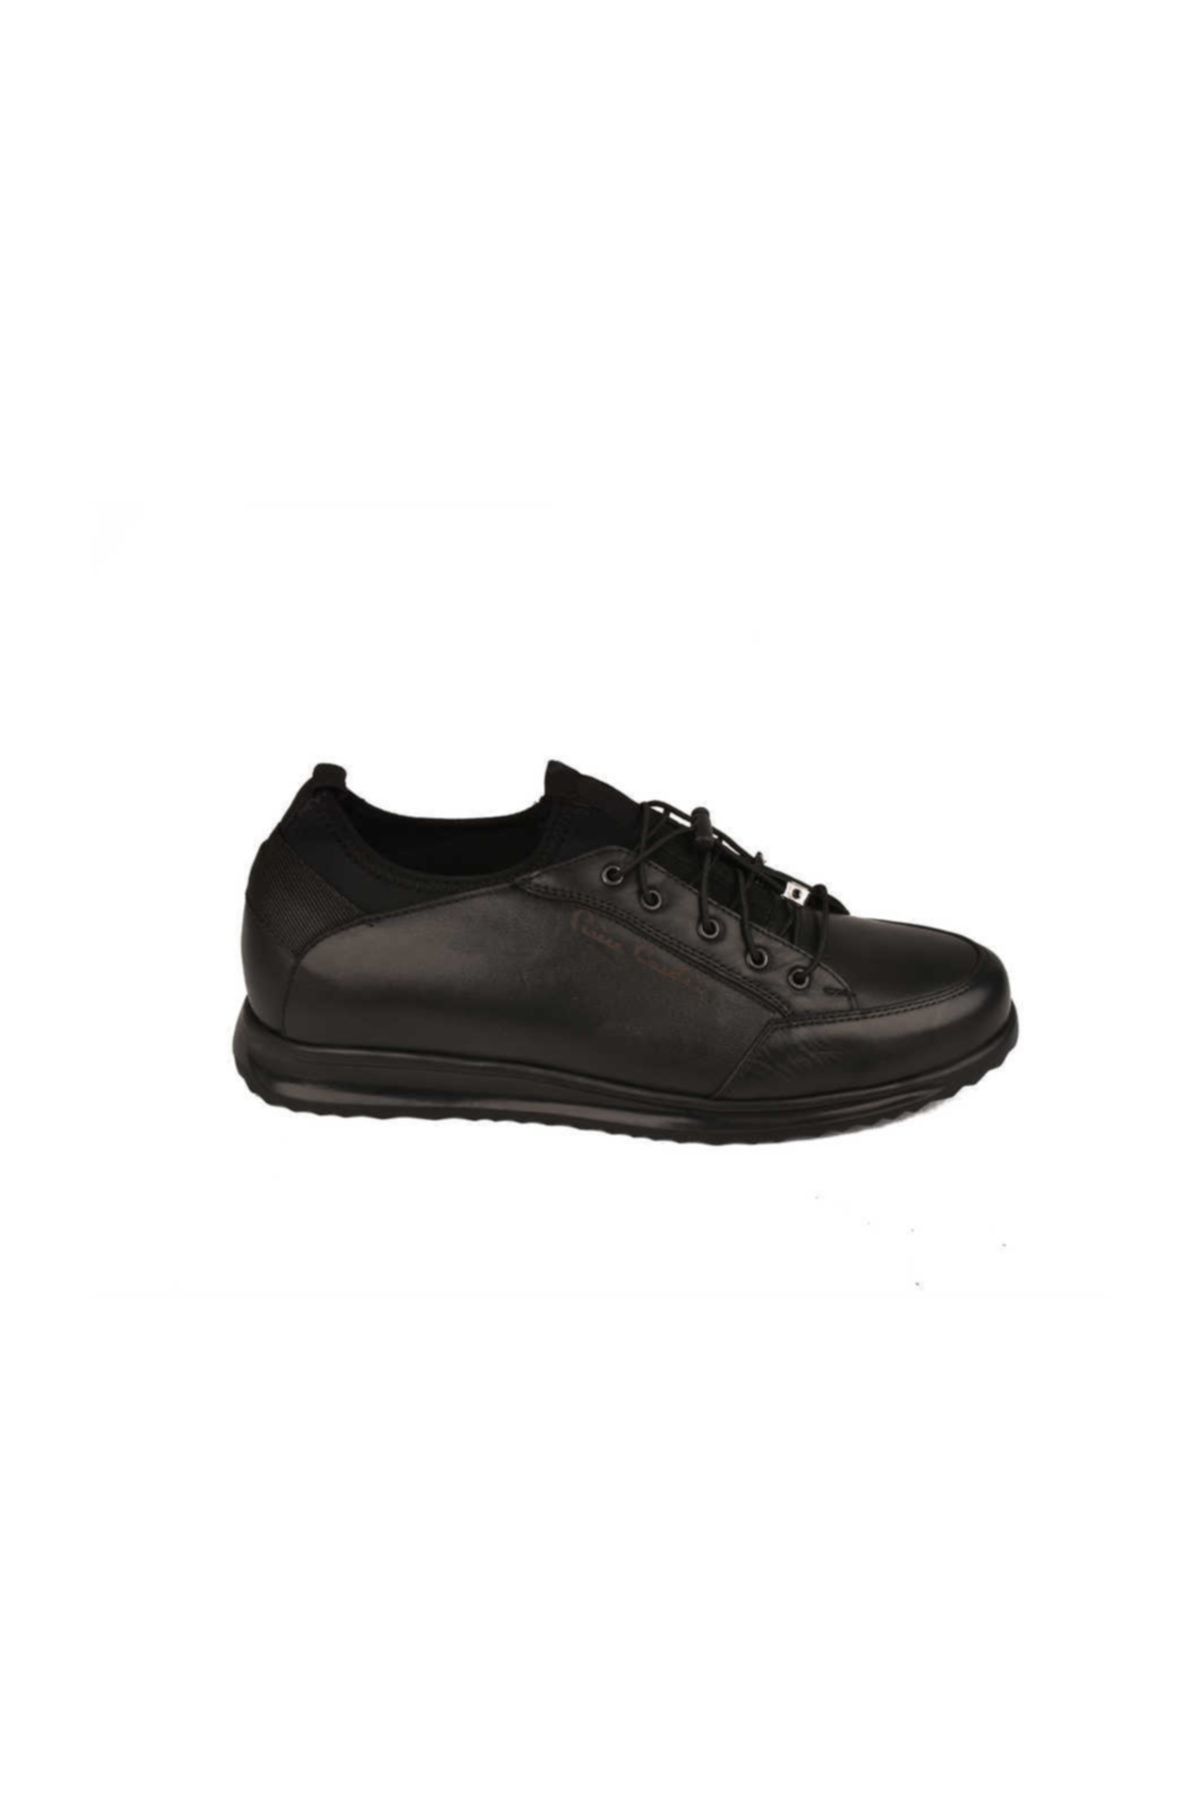 Pierre Cardin Ayakkabı 6258-9k